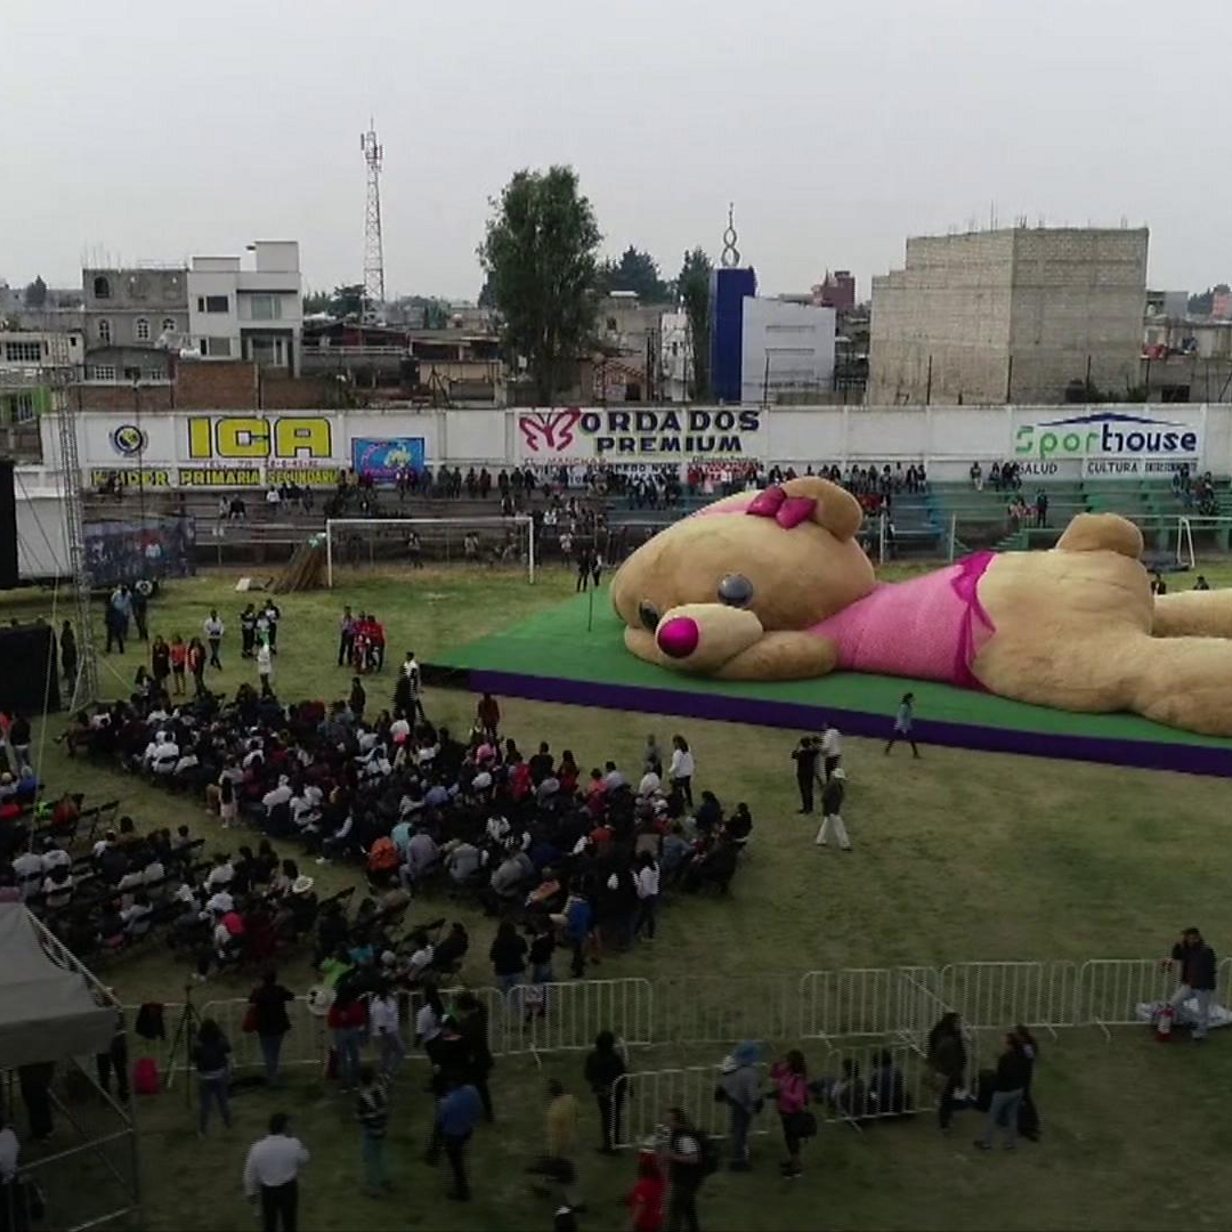 worlds biggest teddy bear